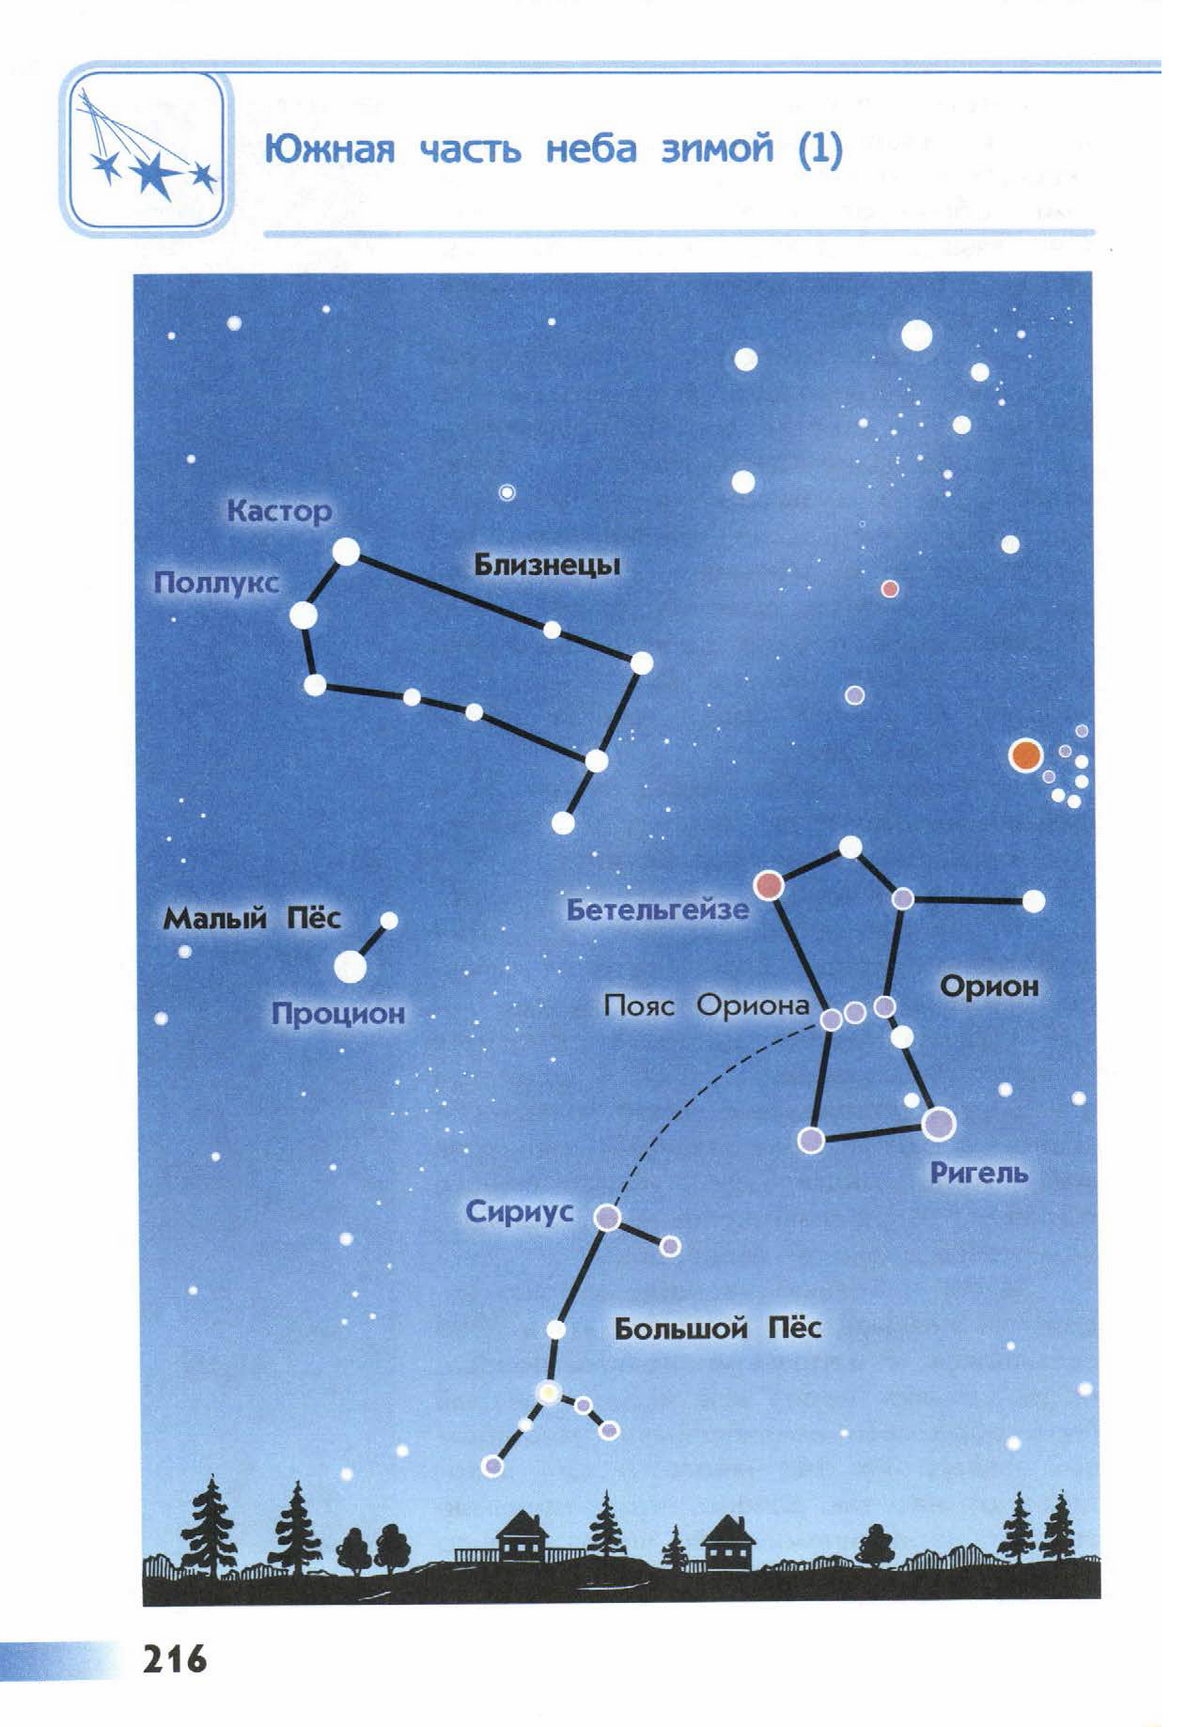 Название звезд на весеннем небе. Созвездие Орион атлас определитель 2 класс. Атлас-определитель от земли до неба 2 созвездия. От земли до неба атлас-определитель 2 класс звезды в созвездии Орион. Атлас-определитель от земли до неба 2 звездное небо Созвездие Орион.